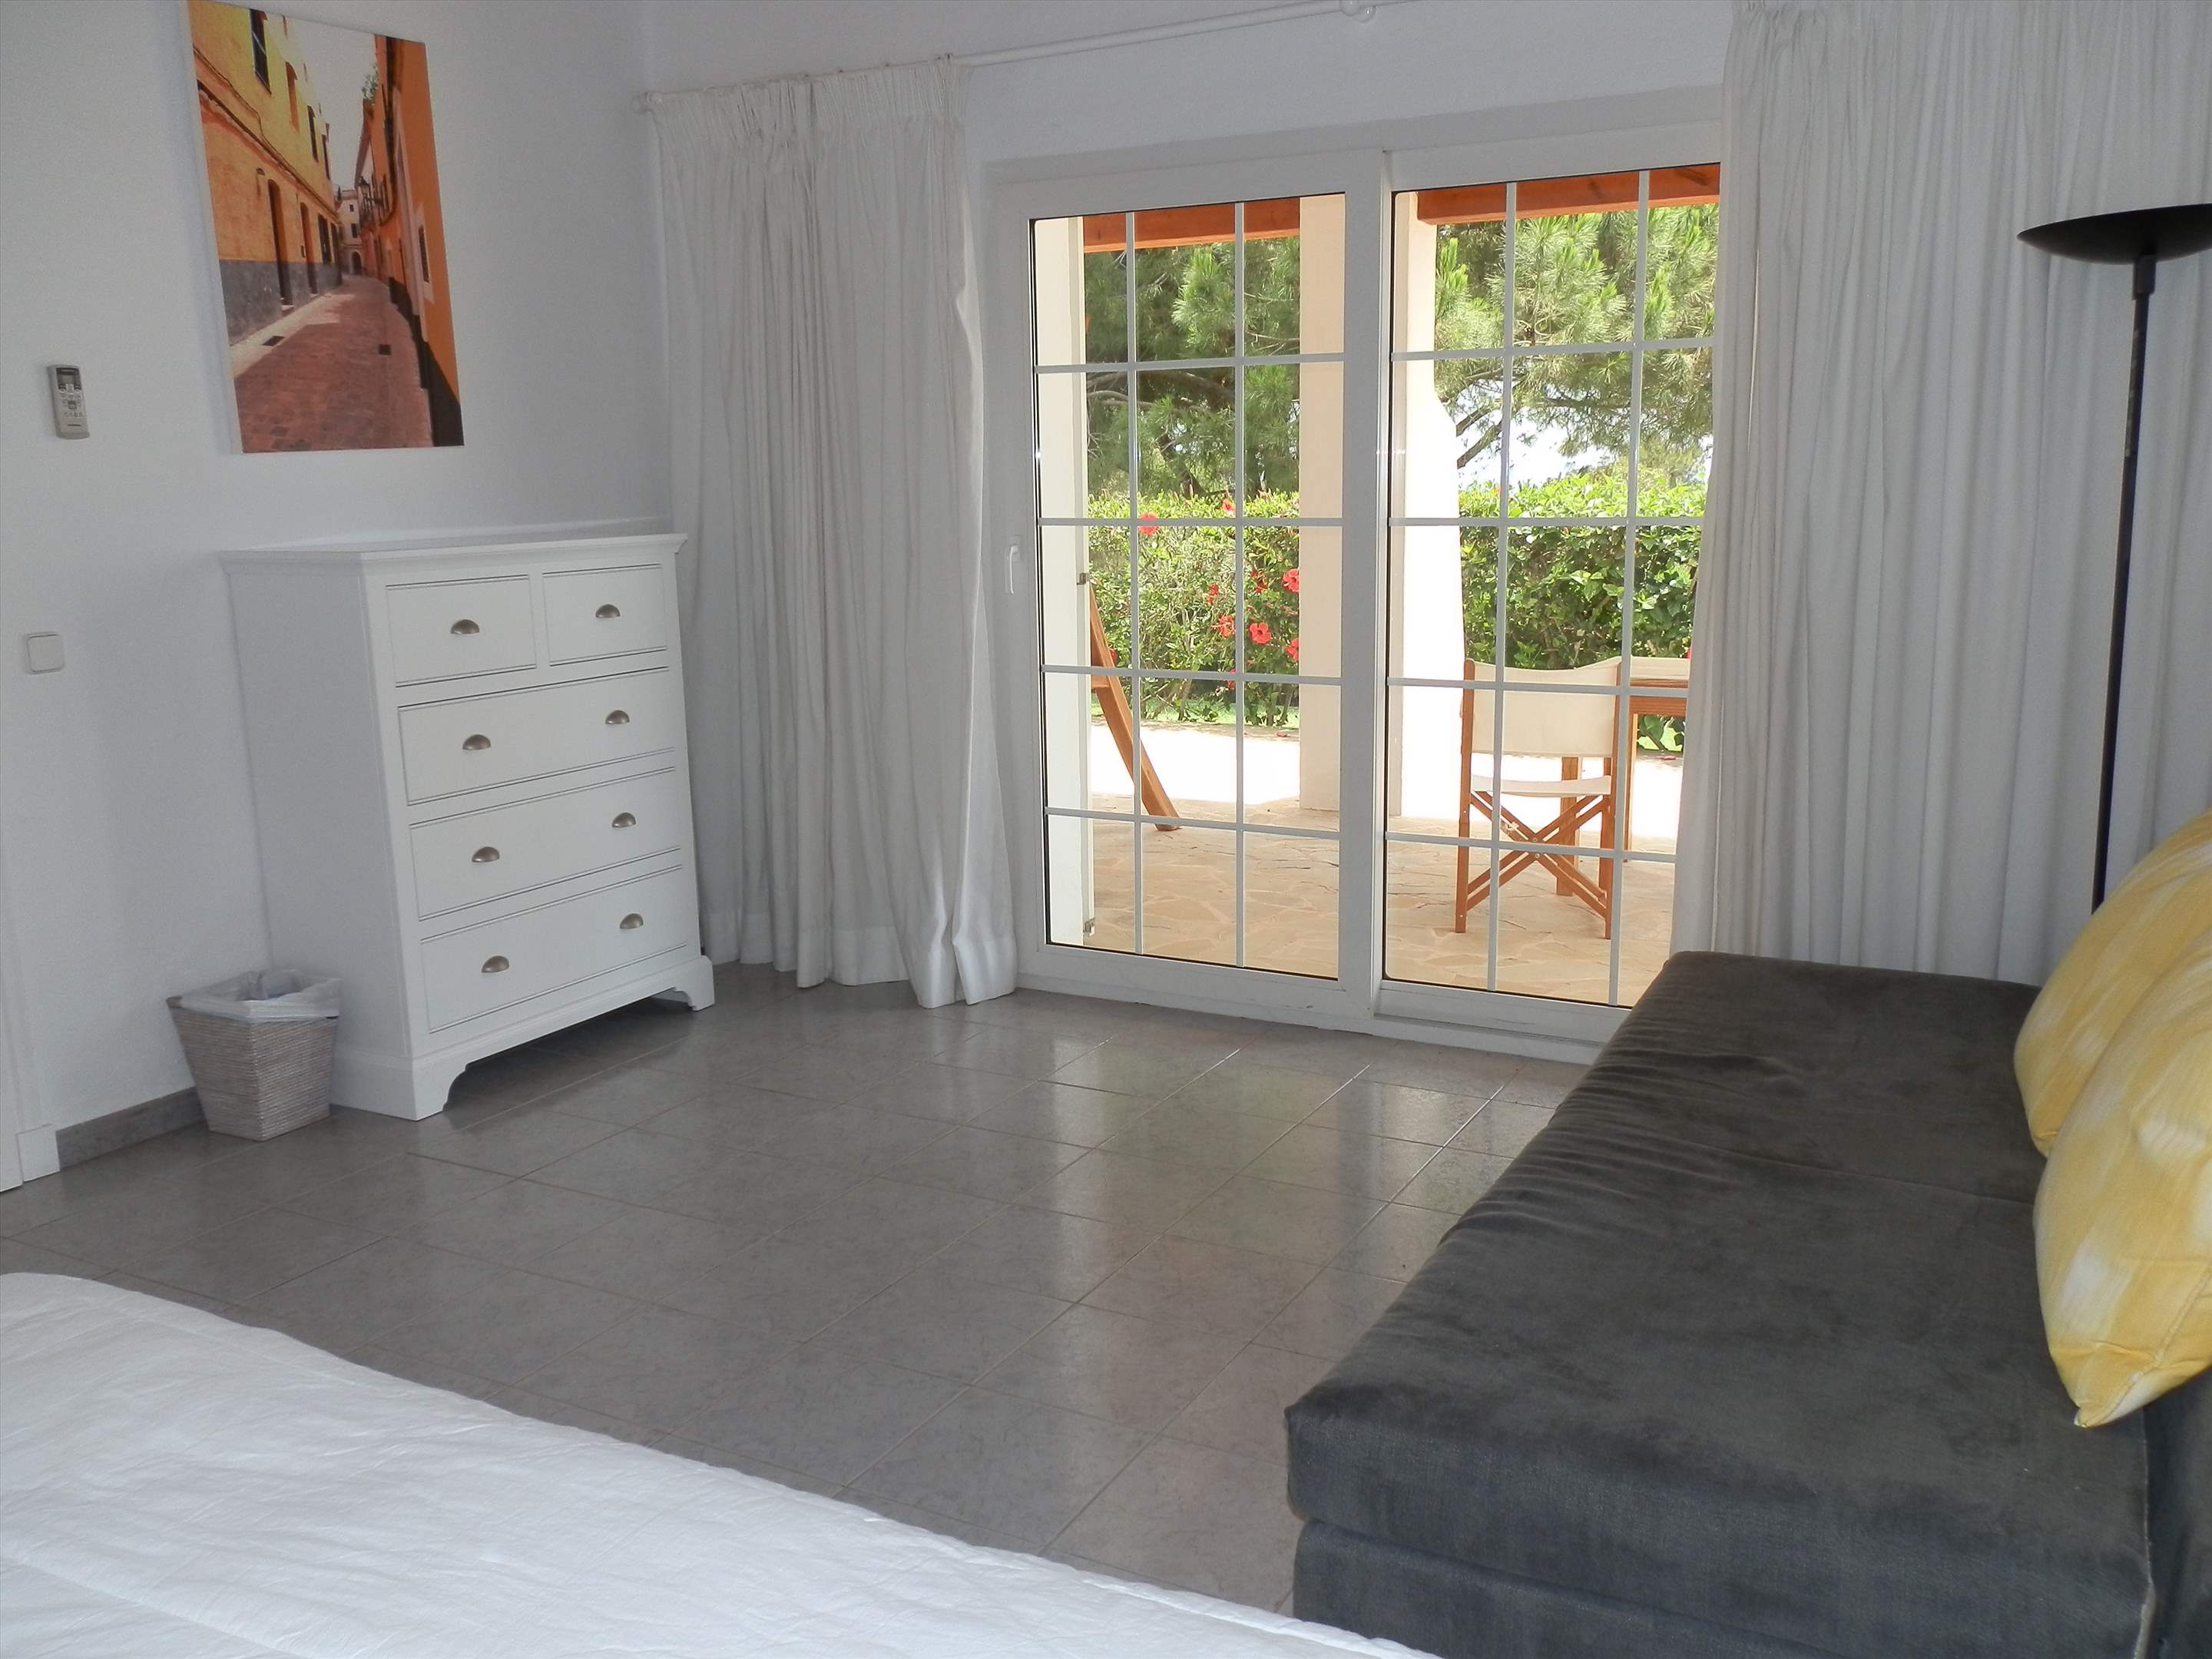 Casa del Mar de Ana-Cristo, 5 Bedroom rate, 5 bedroom villa in Mahon, San Luis & South East, Menorca Photo #28